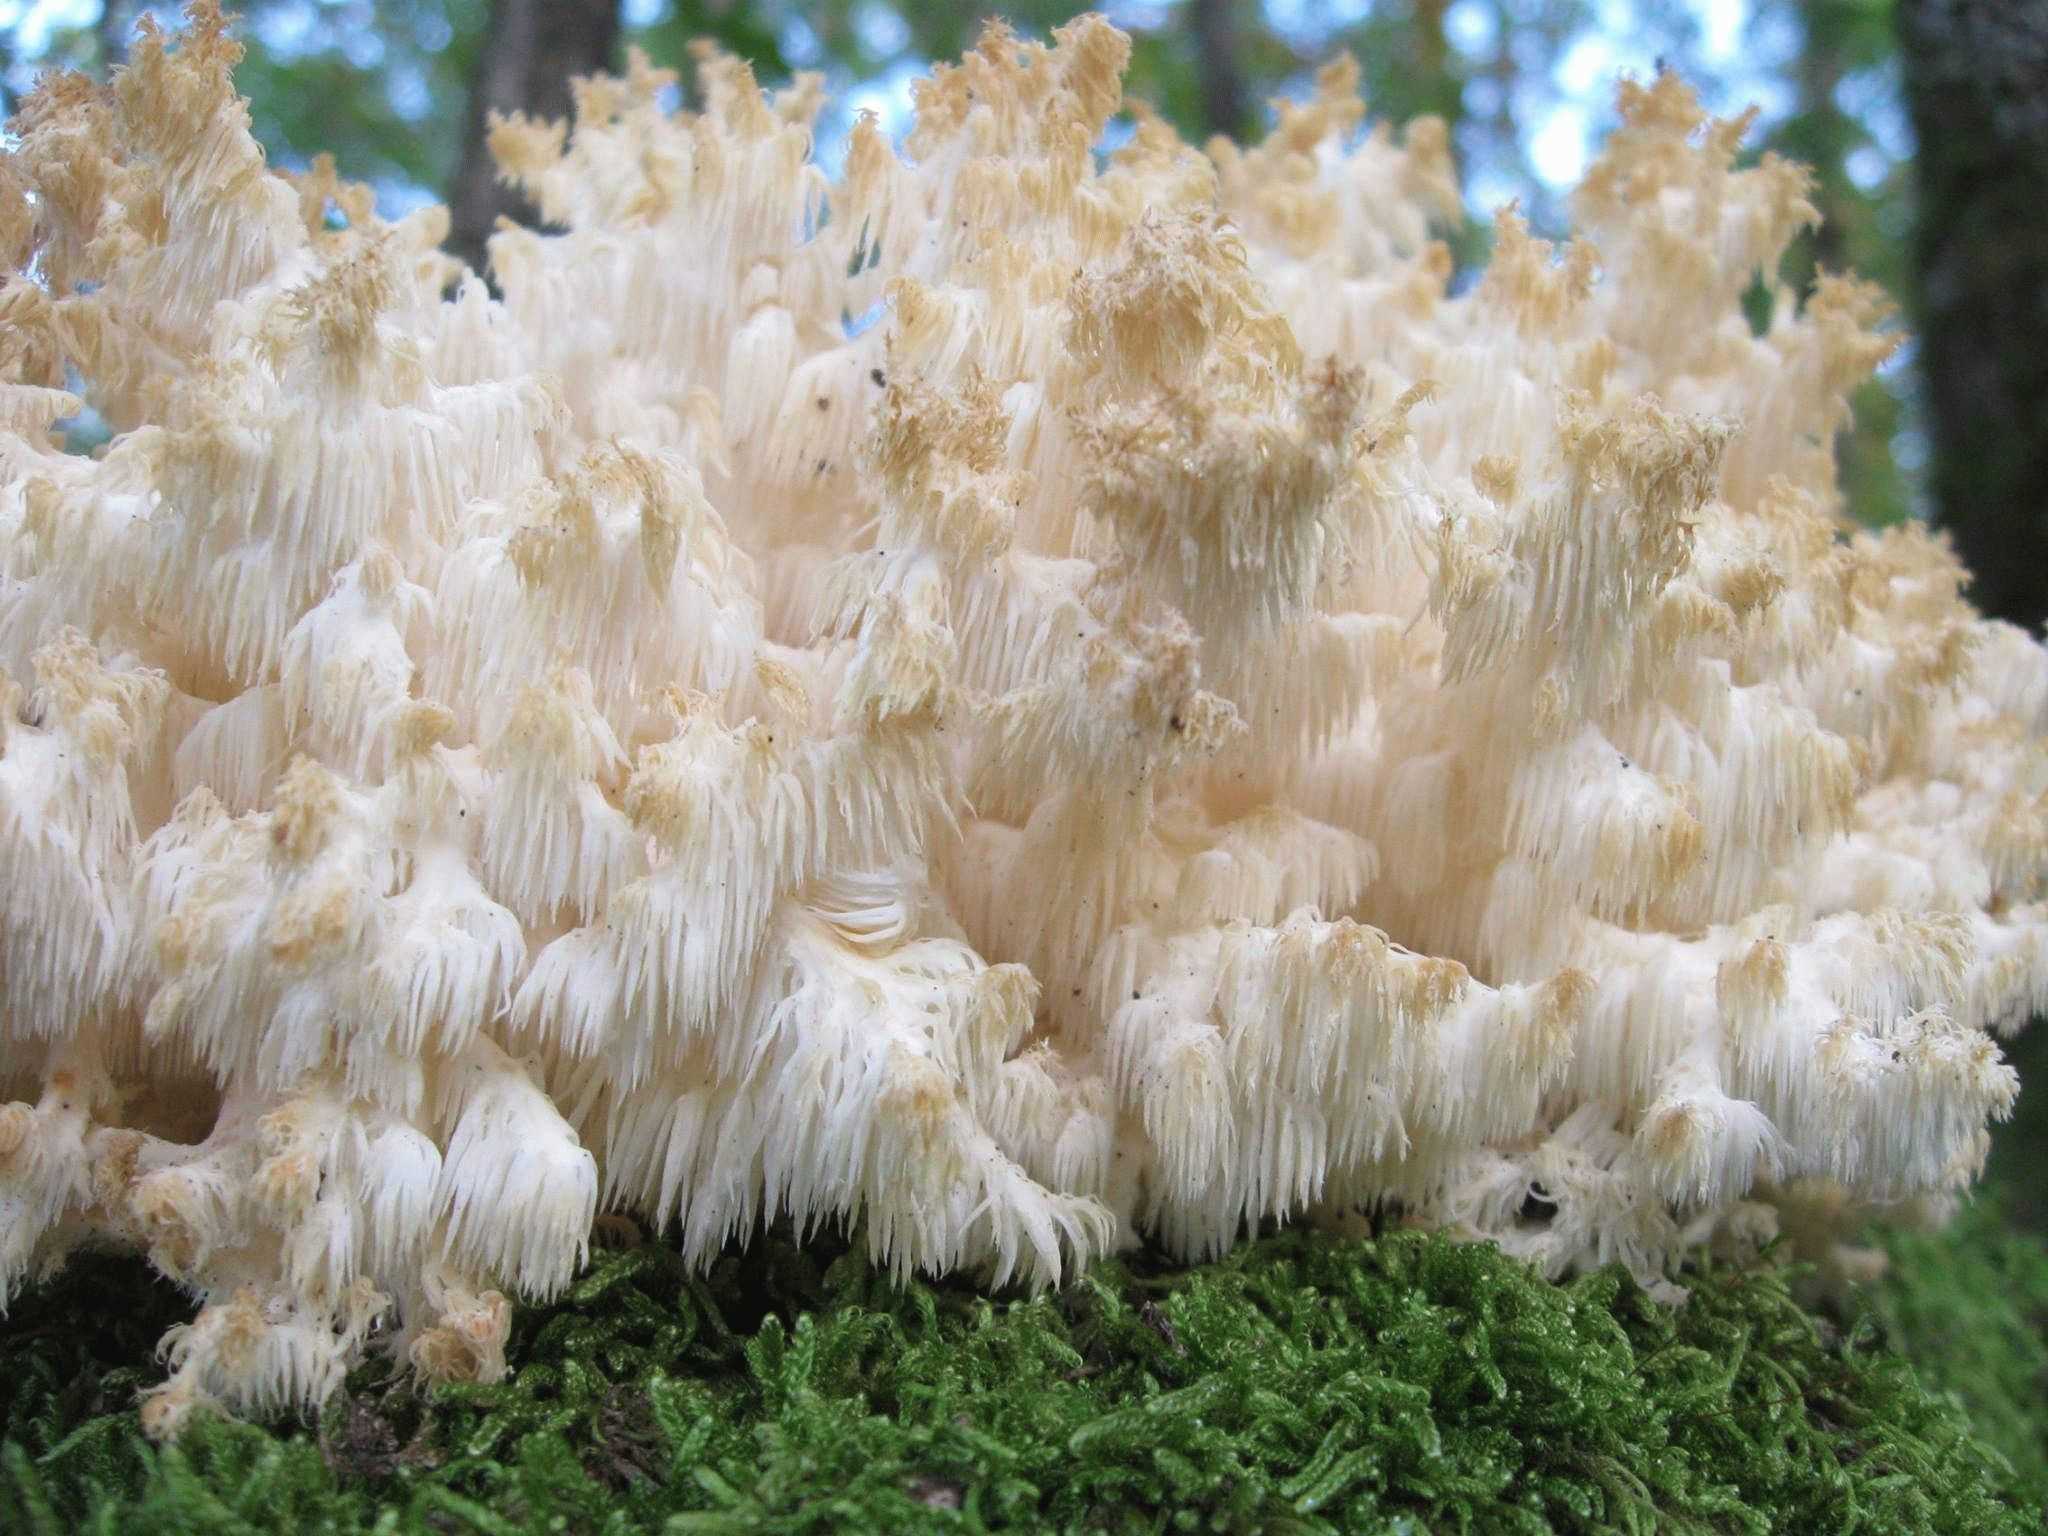 Ежовик коралловидный (коралловый, гериций коралловидный, hericium coralloides): как выглядит, где и как растет, съедобный или нет, как готовить, польза настойки